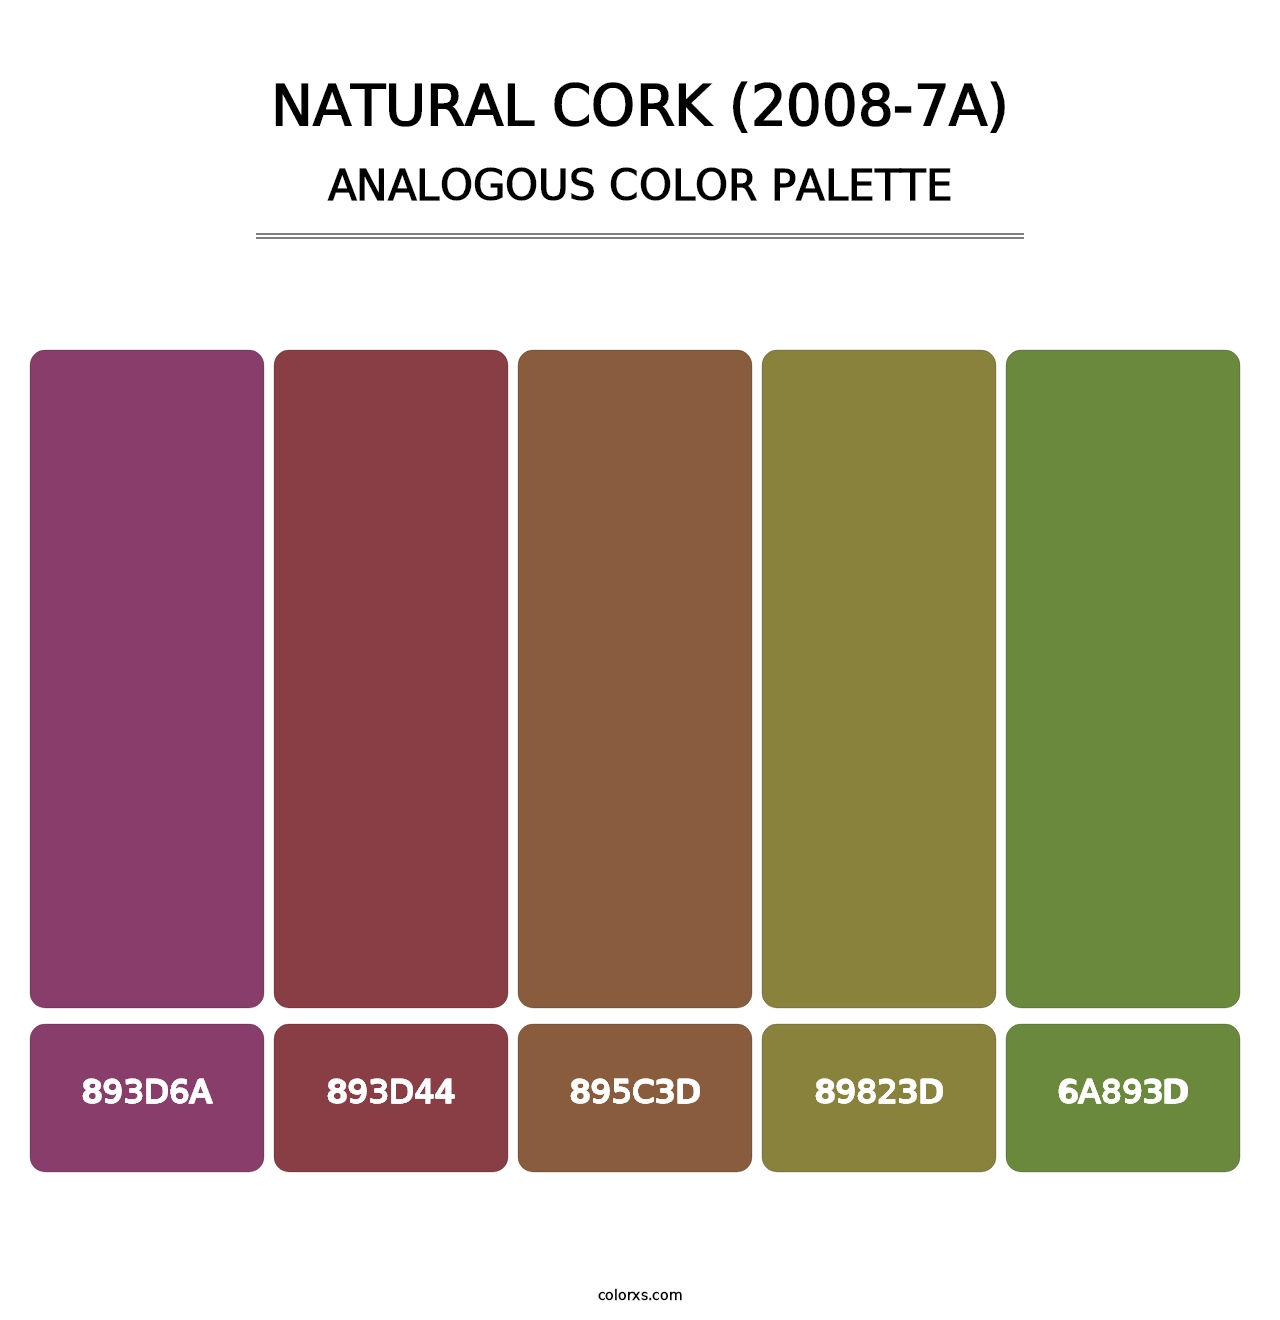 Natural Cork (2008-7A) - Analogous Color Palette